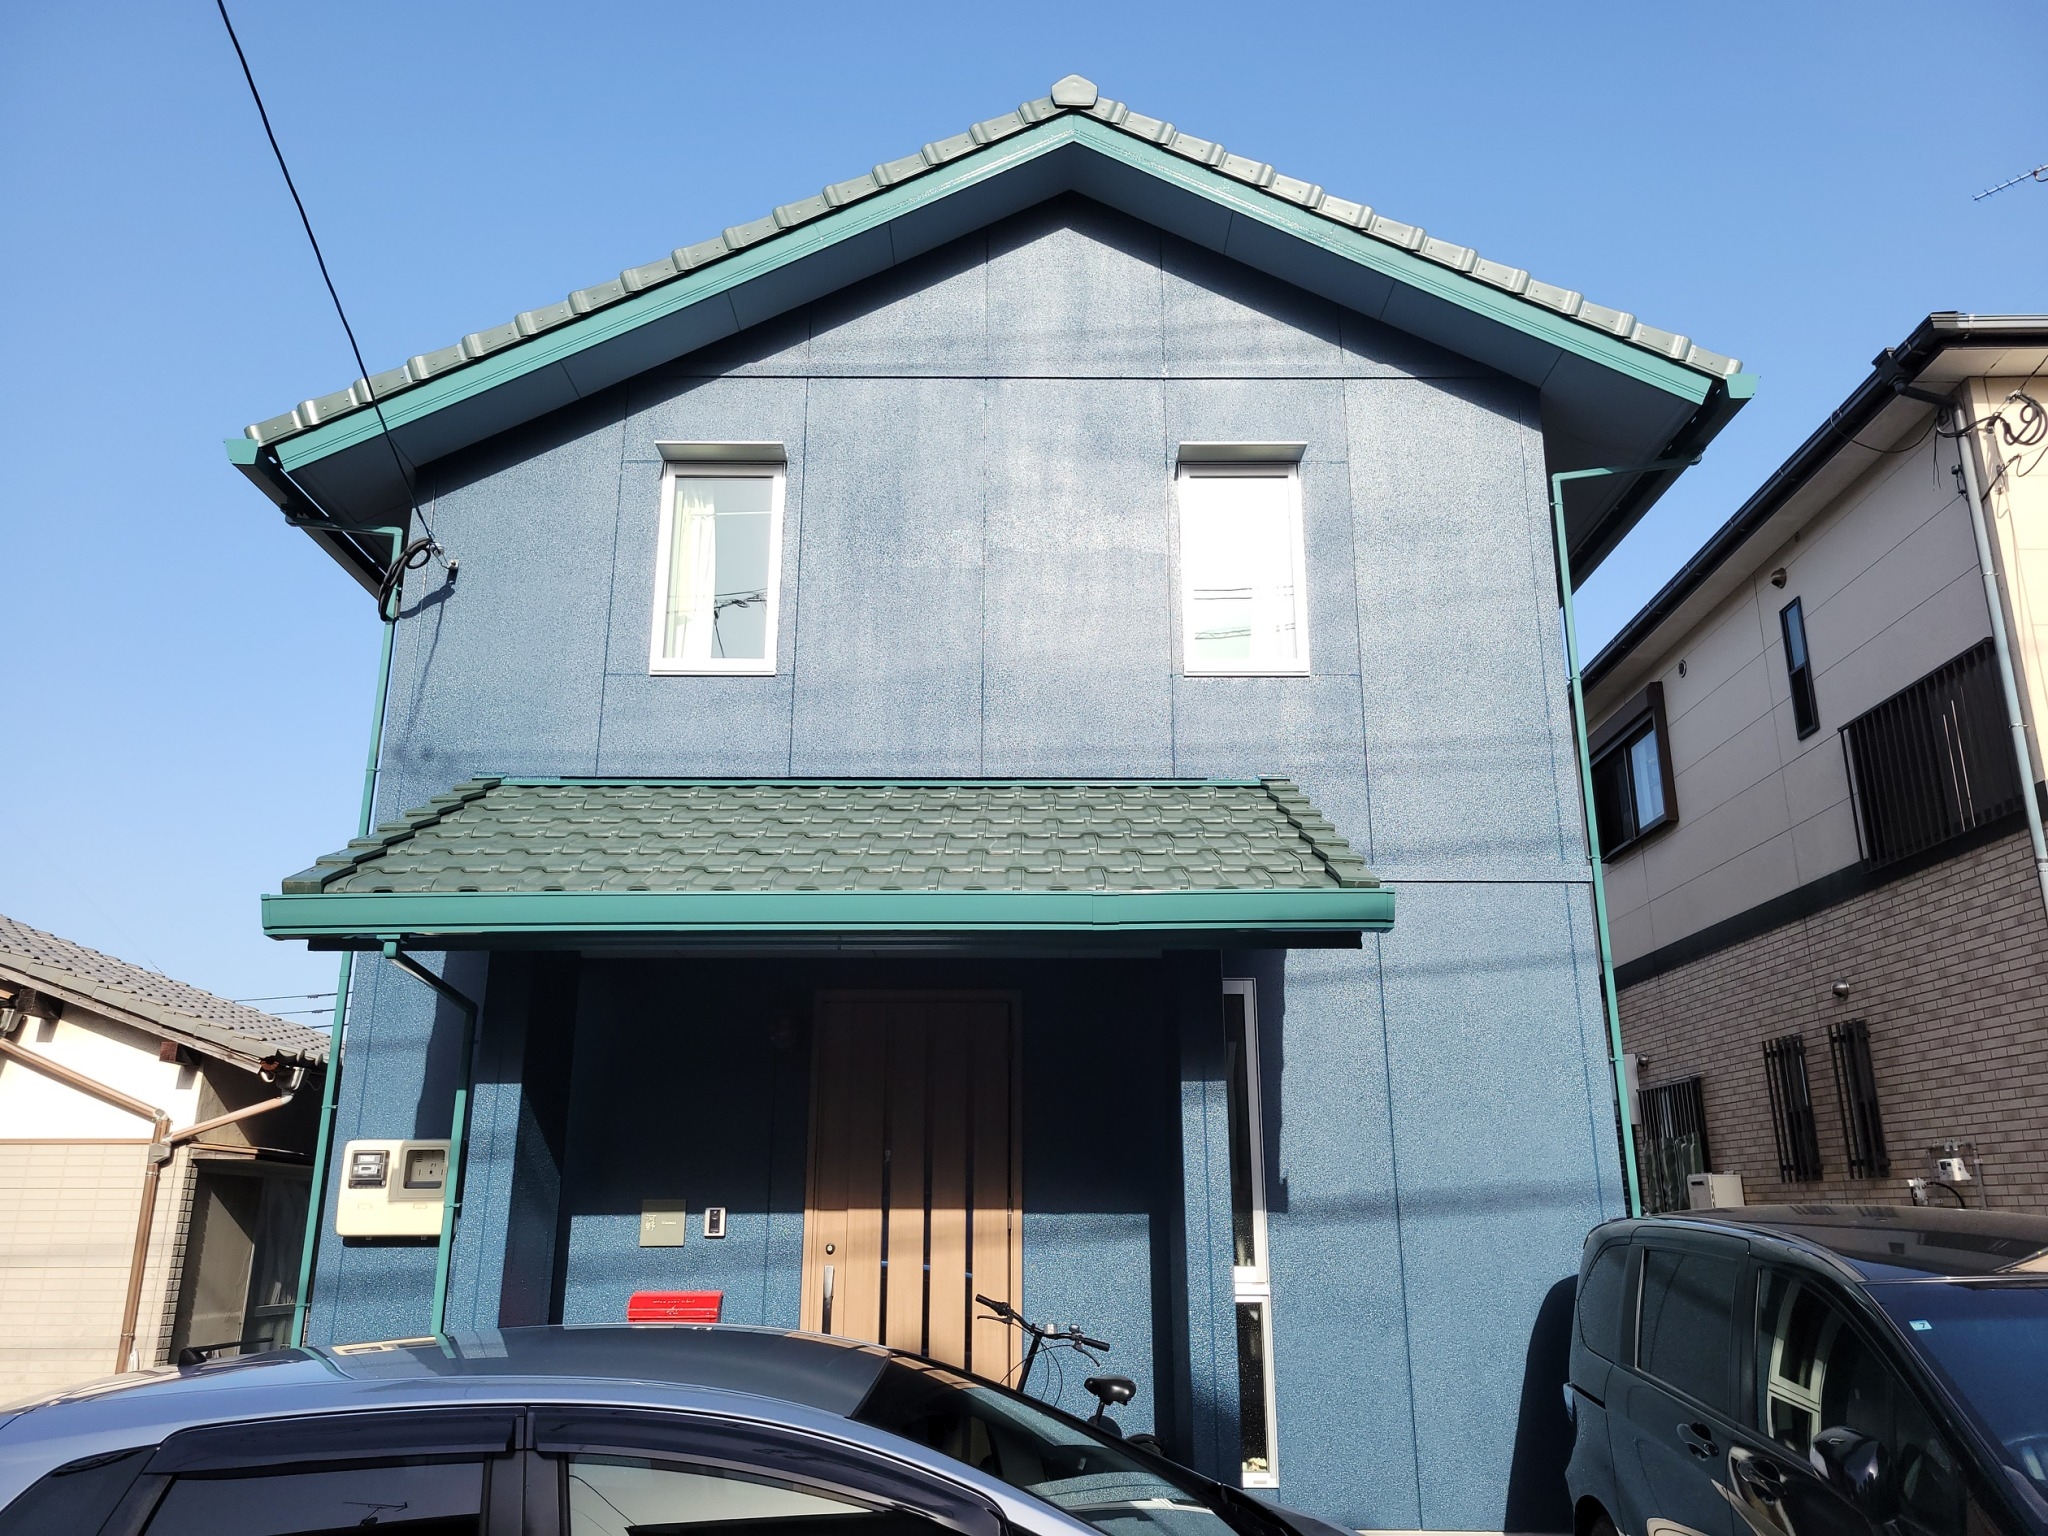 福岡県福岡市東区和白東のK様邸で全体的に色褪せを起こしている外壁を元のブルーグレーに塗装し付帯部と屋根はグリーン系でまとめたこだわりの配色で仕上げました。3/29完成です。【HPより】